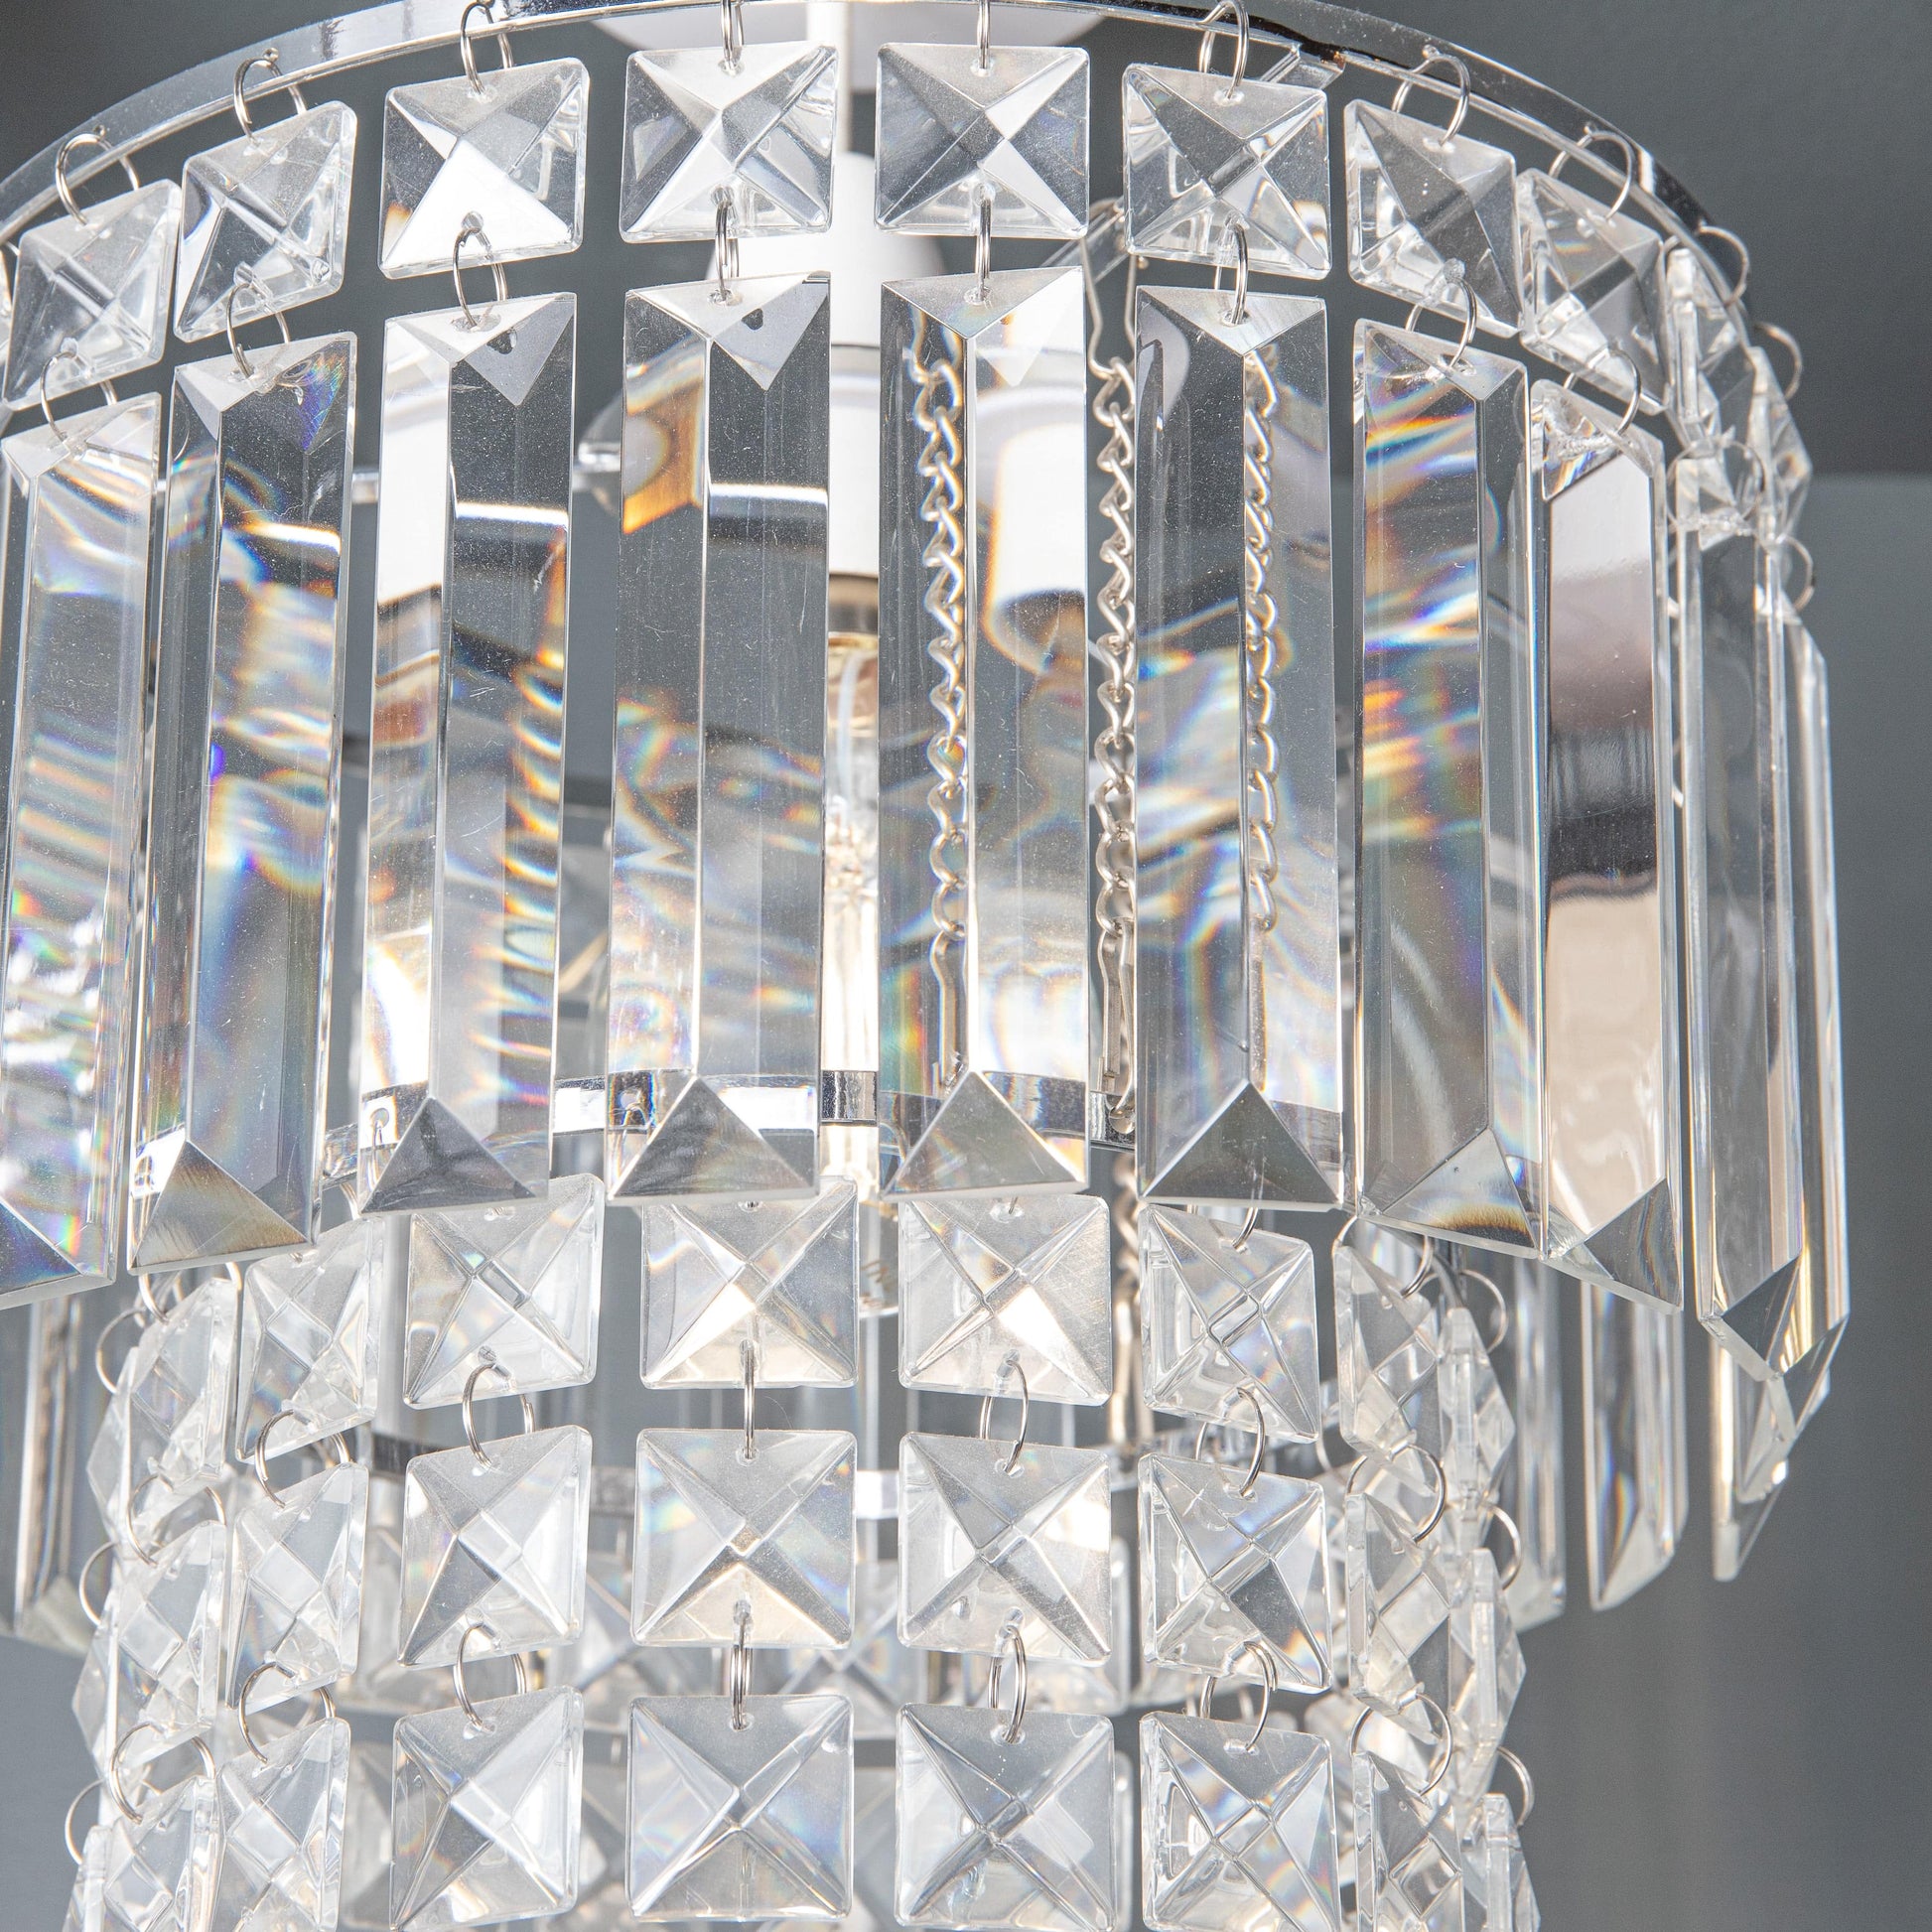 Lights  -  Kyla Polished Chrome & Glass Pendant Light Shade  -  50139670